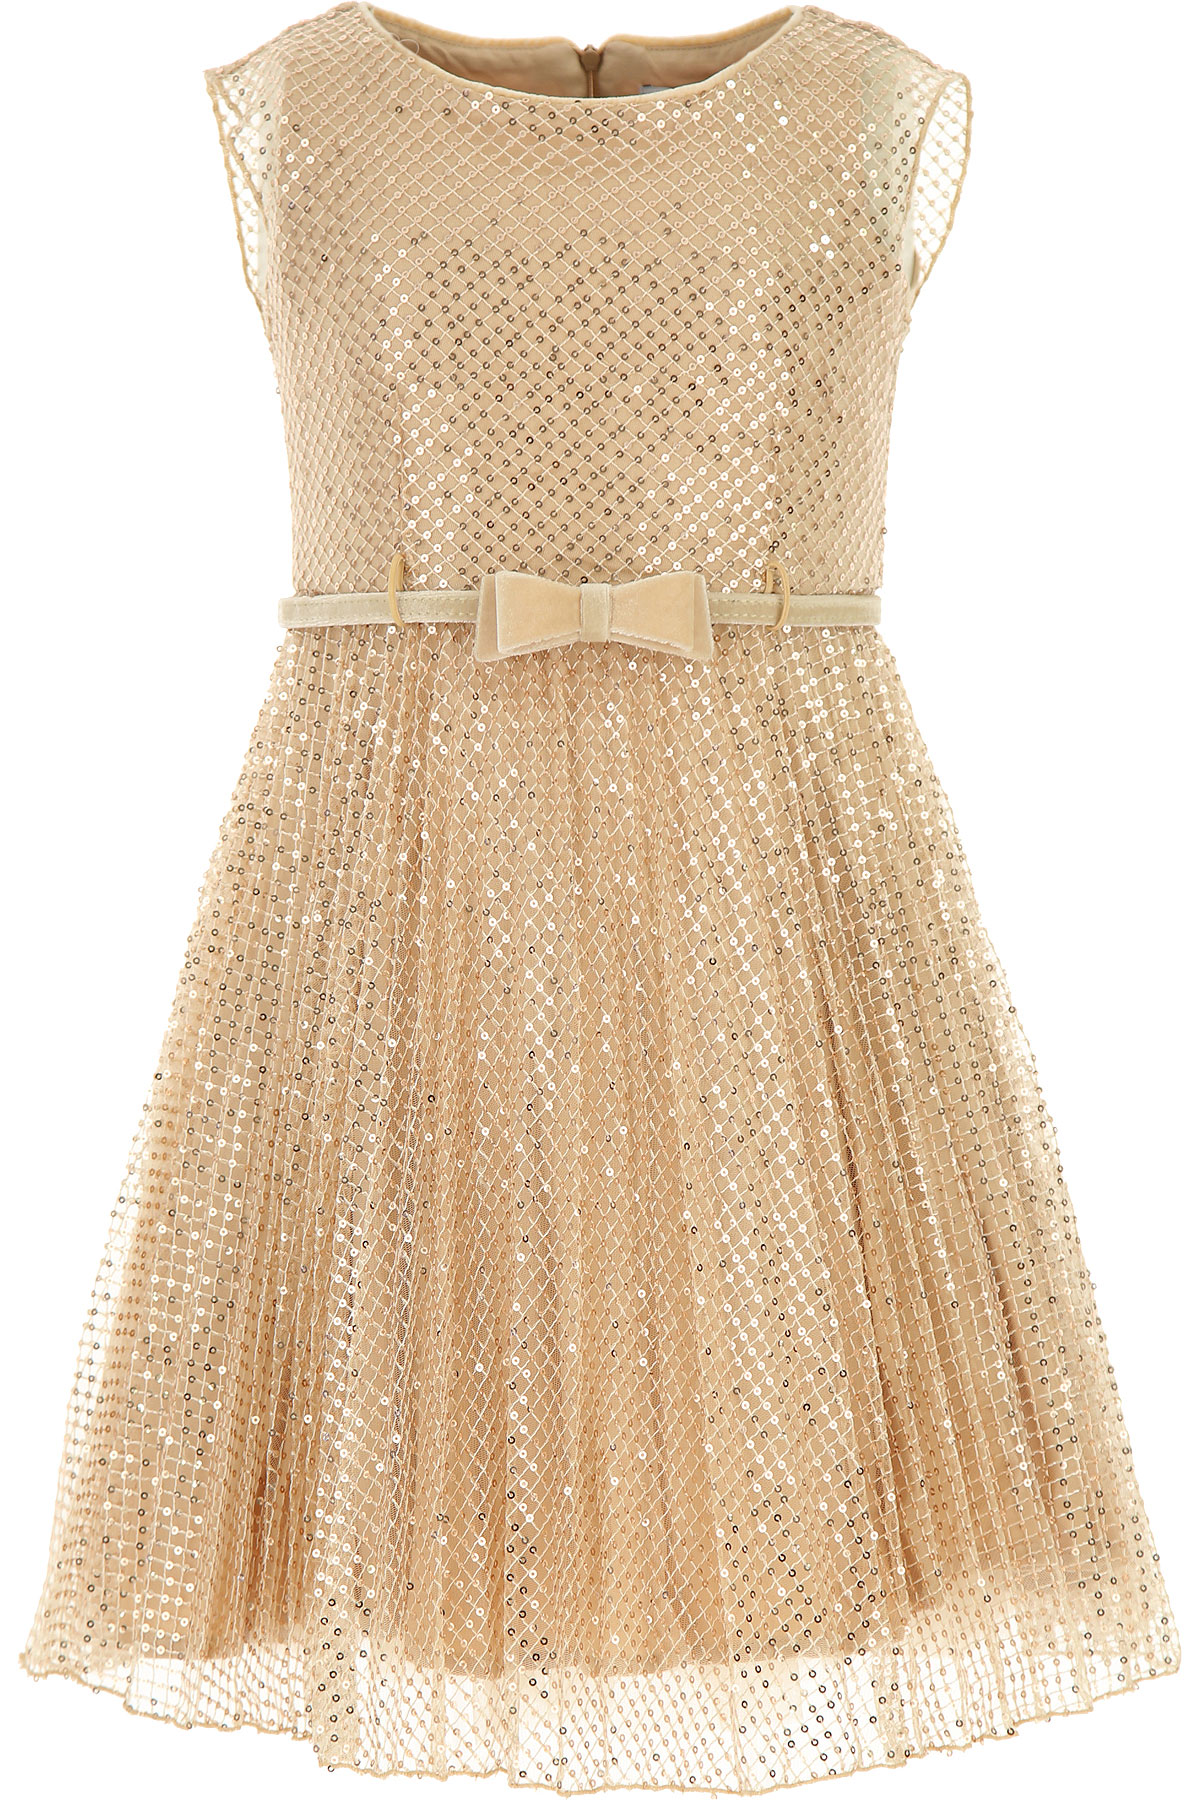 Monnalisa Kleid für Mädchen Günstig im Sale, Goldfarben, Polyester, 2017, 6Y 8Y